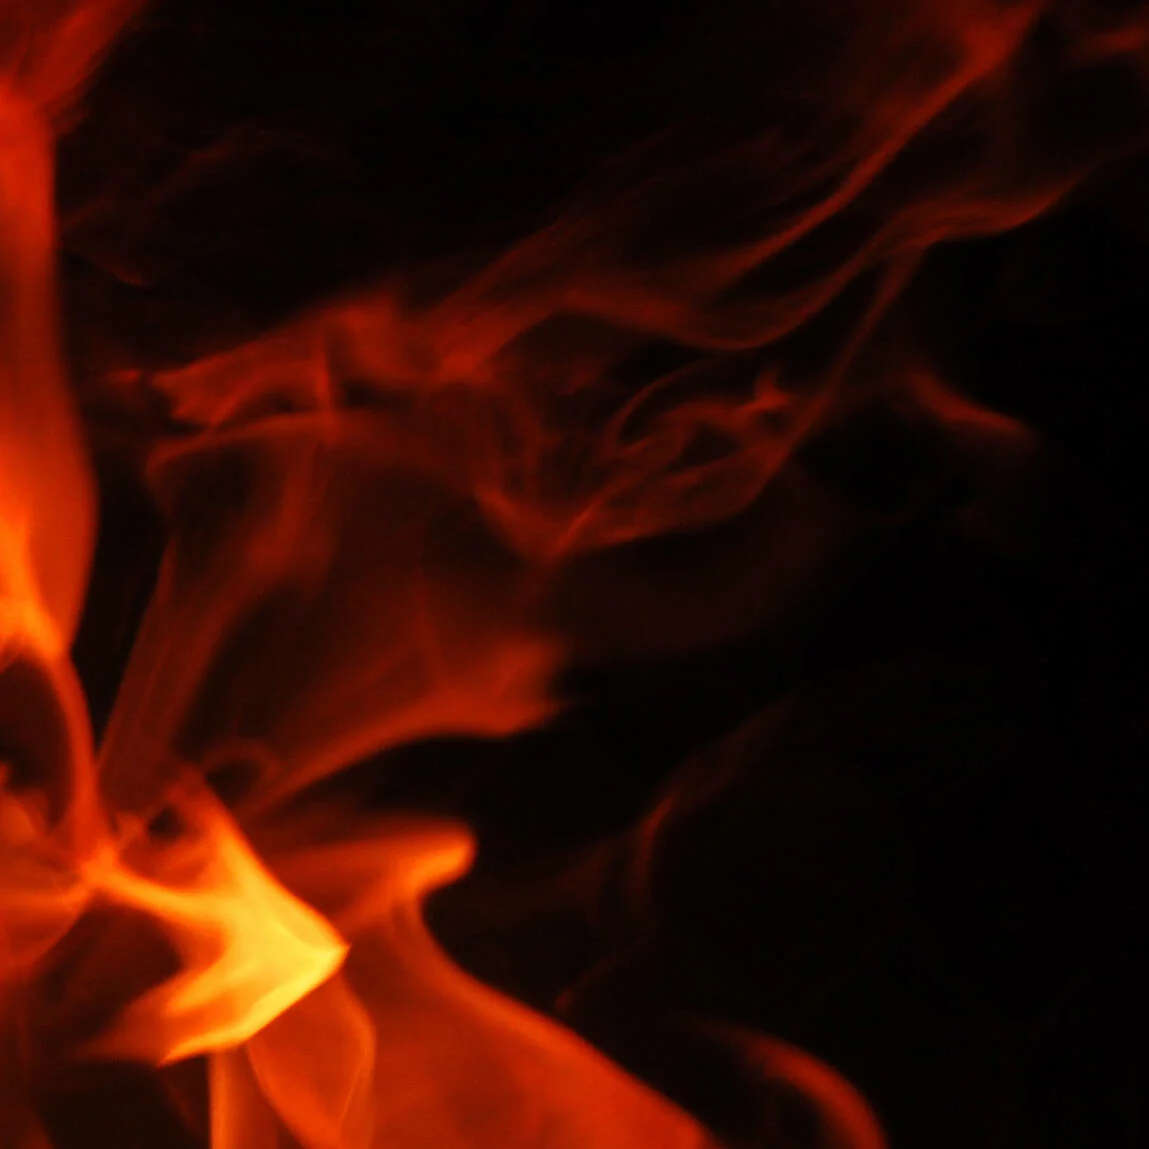  2015/08/Fire-Flames.jpg 